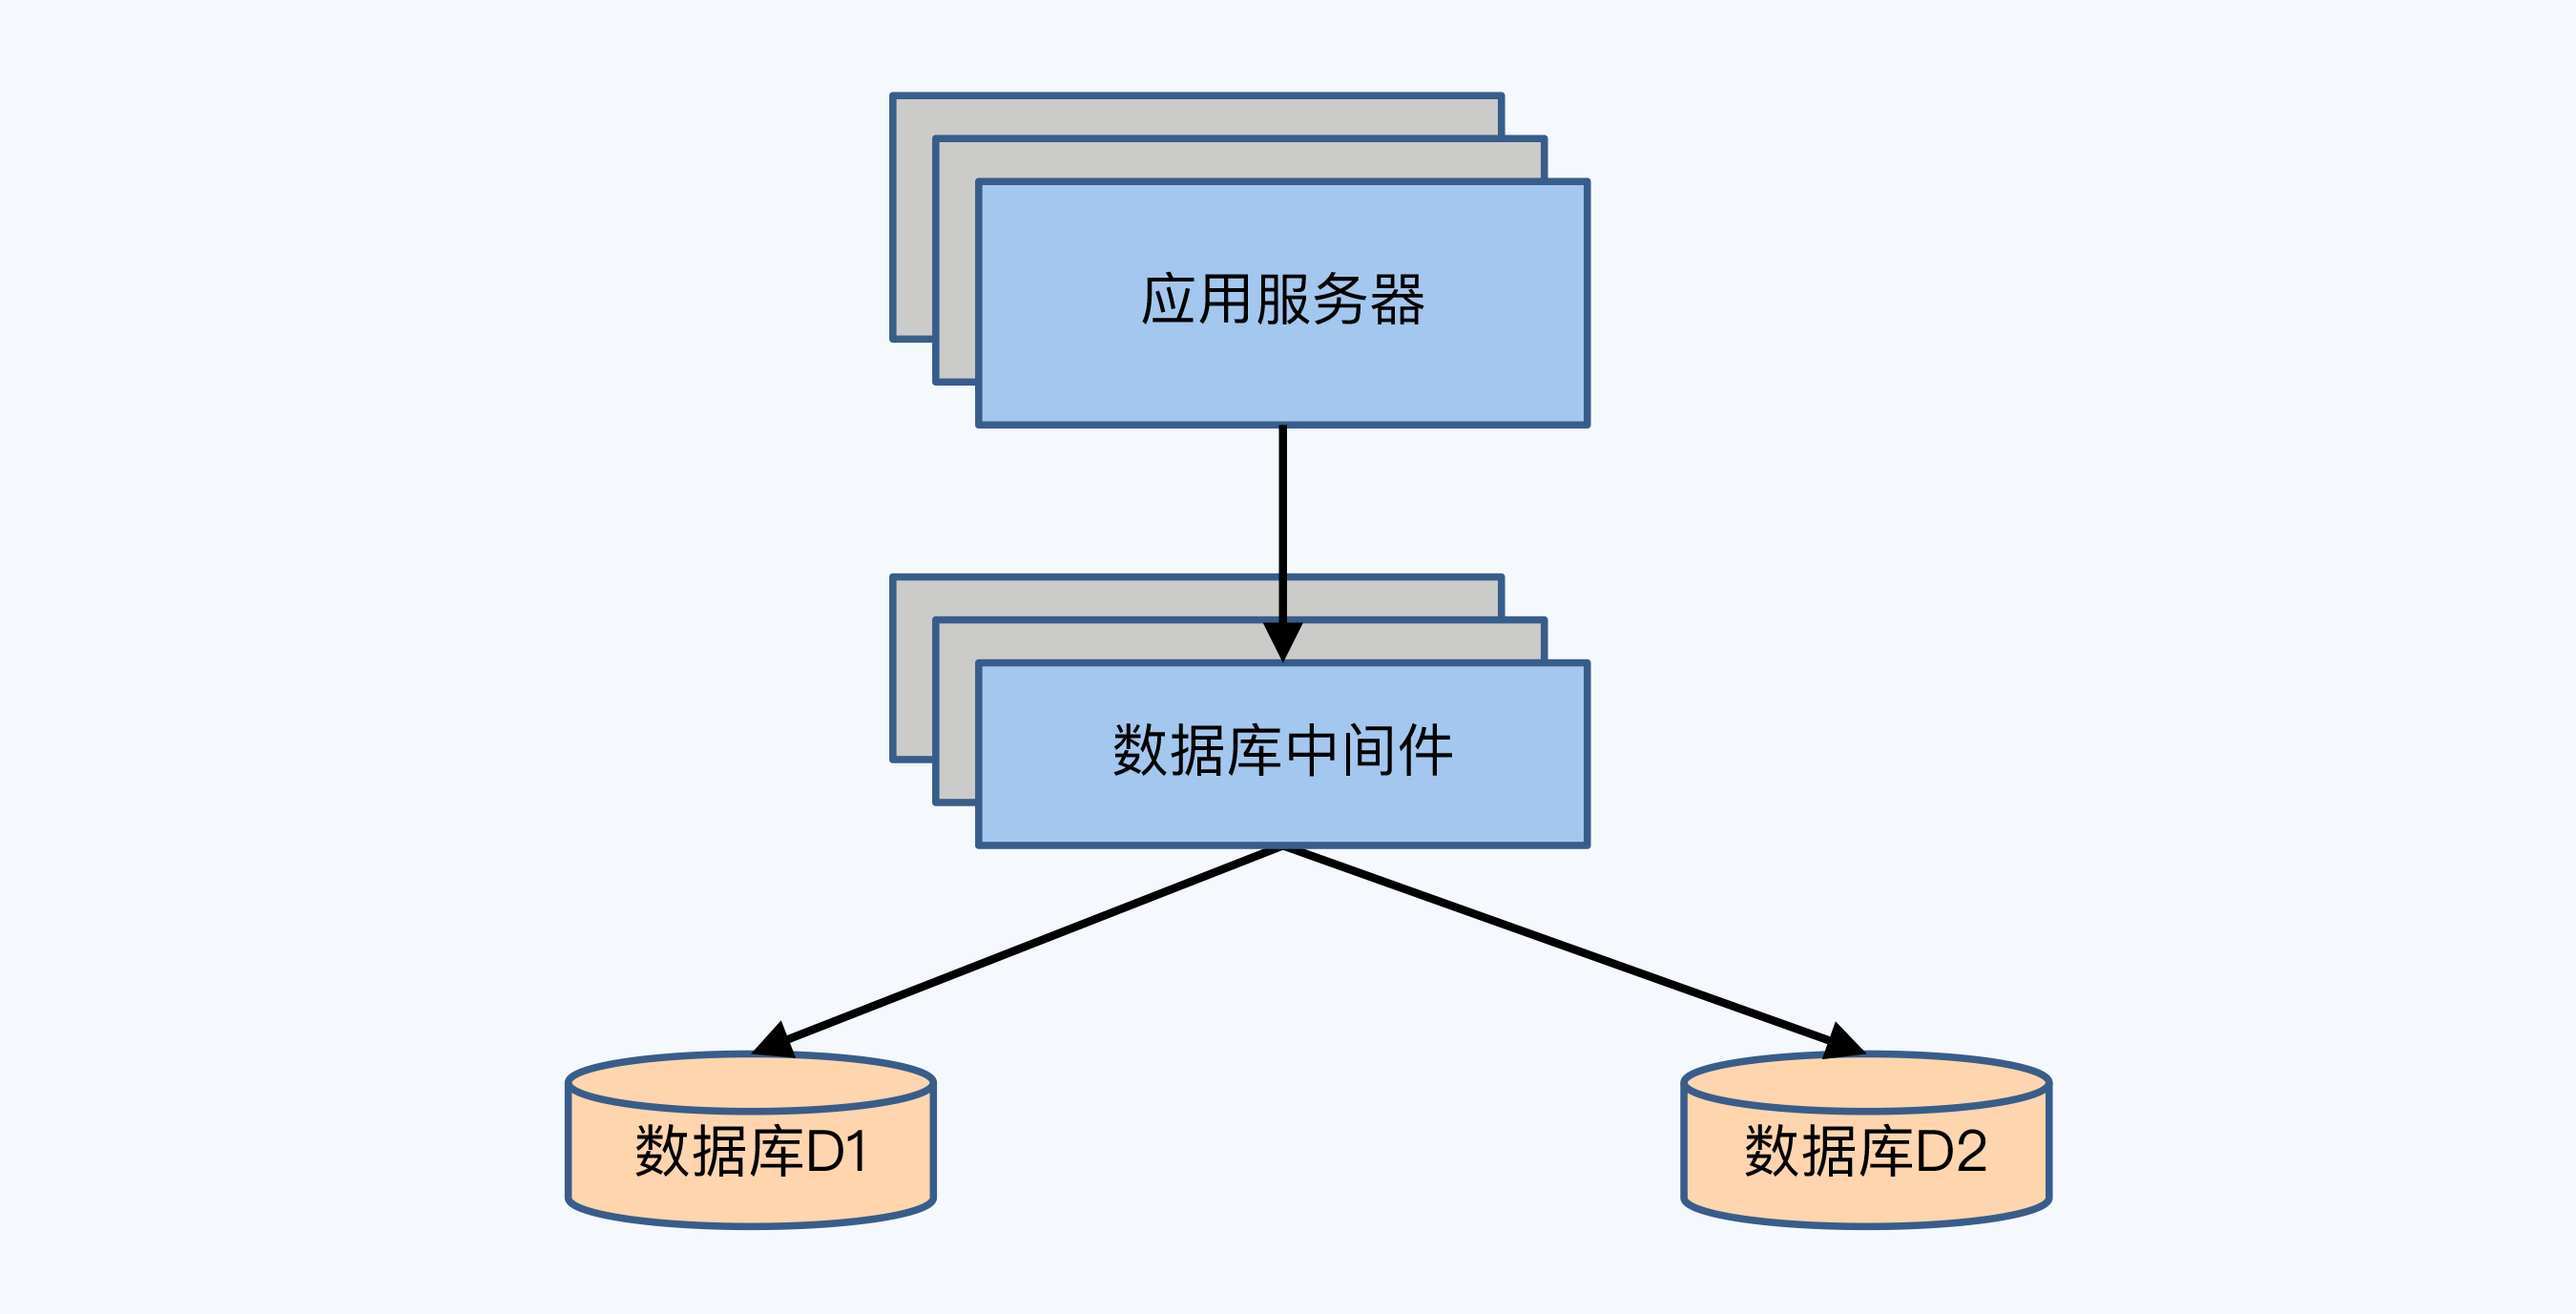 2PC 举例架构图